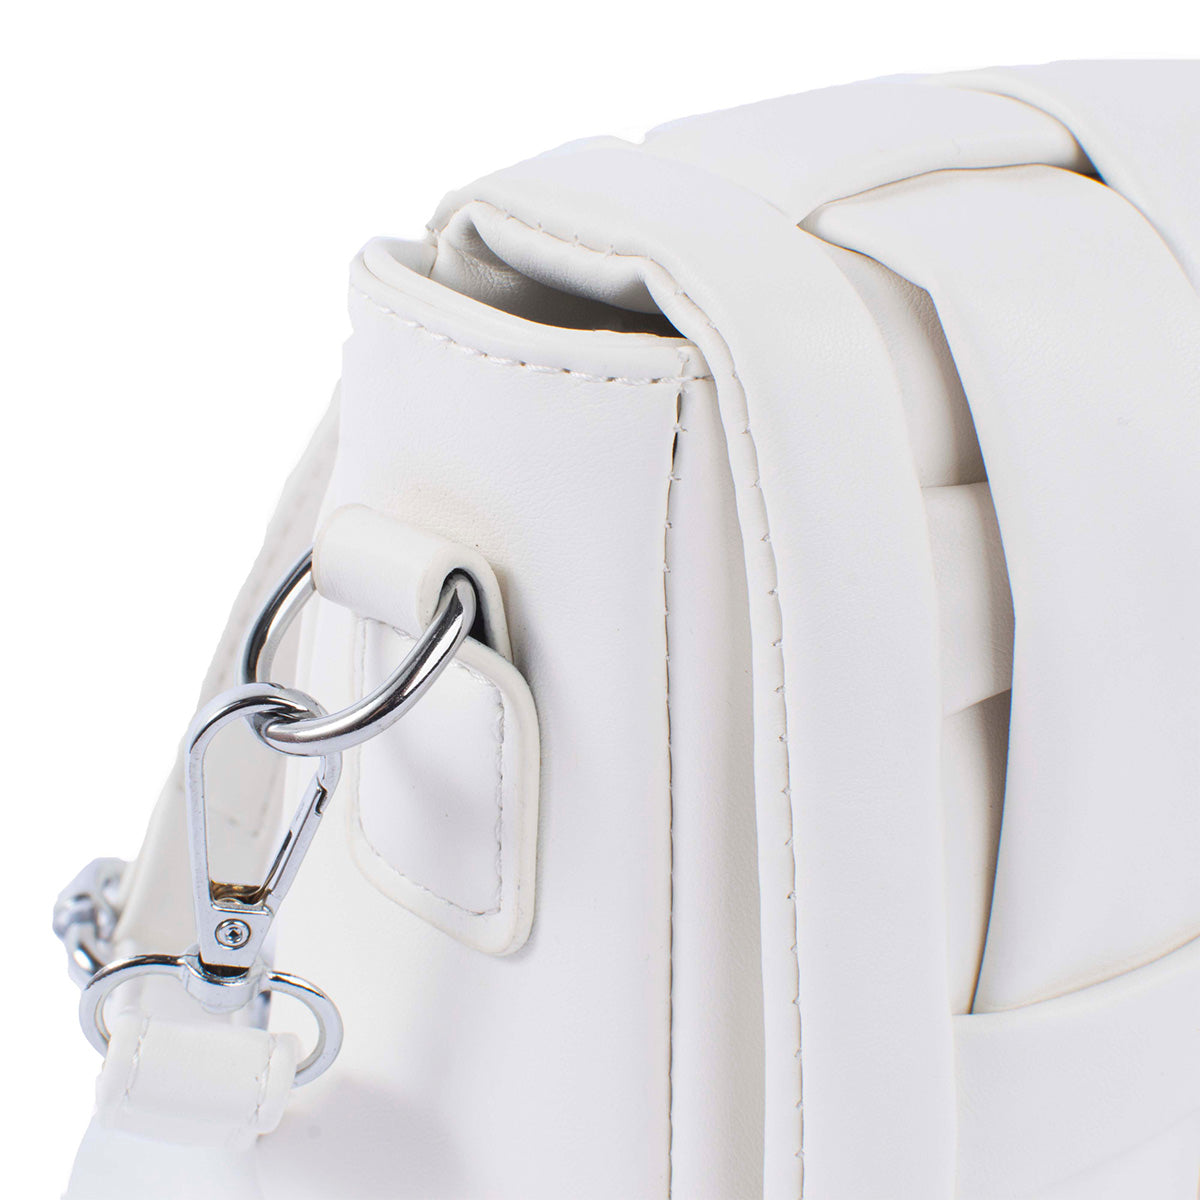 Bolso tipo bandolera color blanco diseño acolchado y moderno